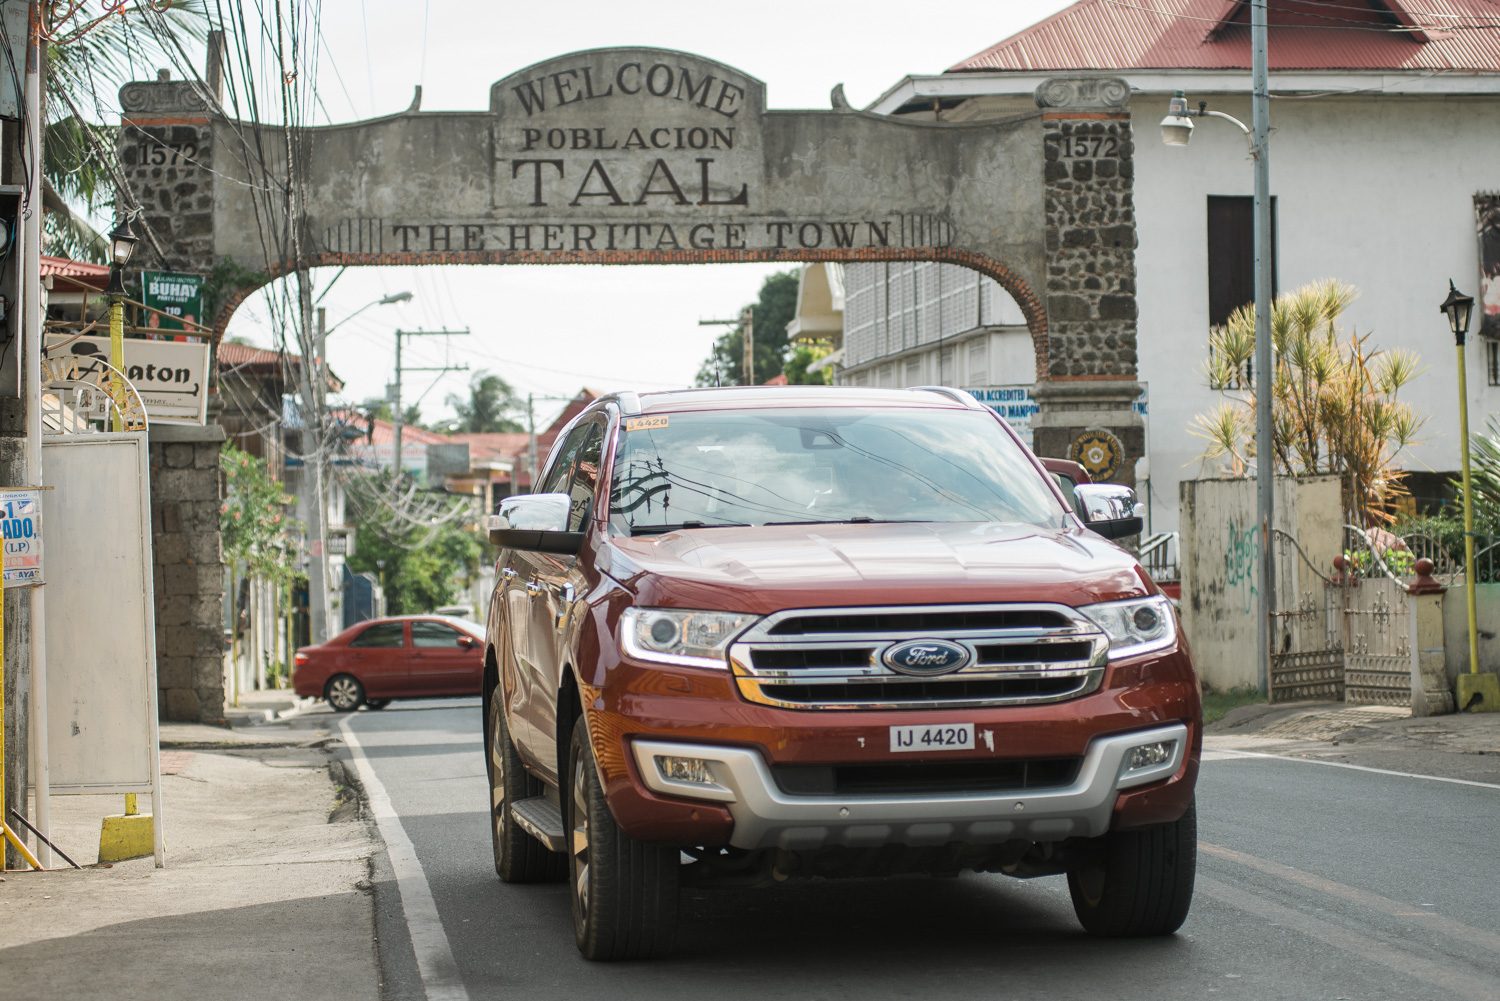 EXPLORING. The Bonifacio family takes the Ford Everest through Taal Heritage Town 